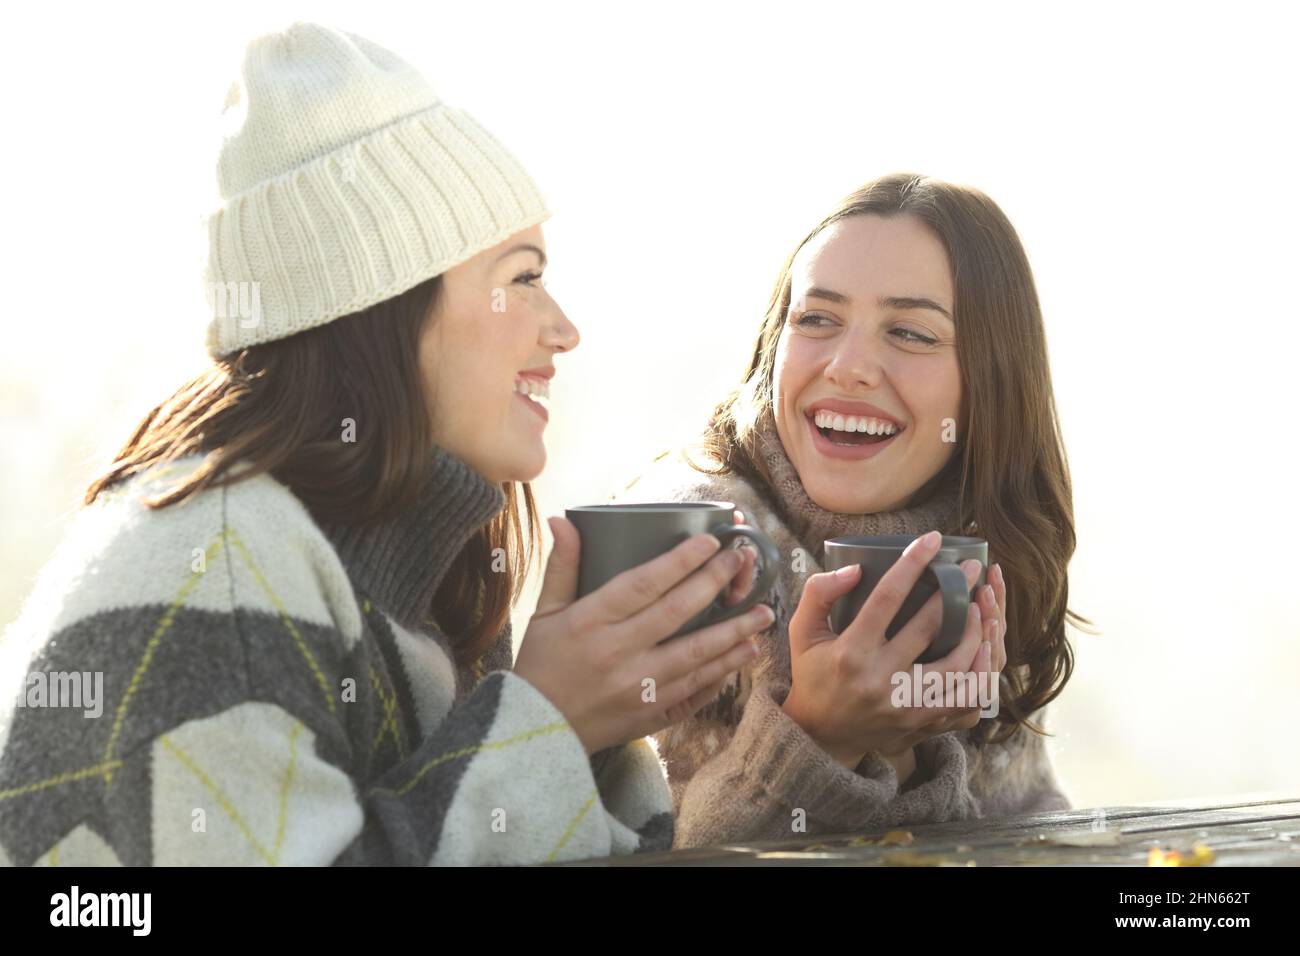 Des amis heureux buvant du café et parlant dans un parc en hiver Banque D'Images